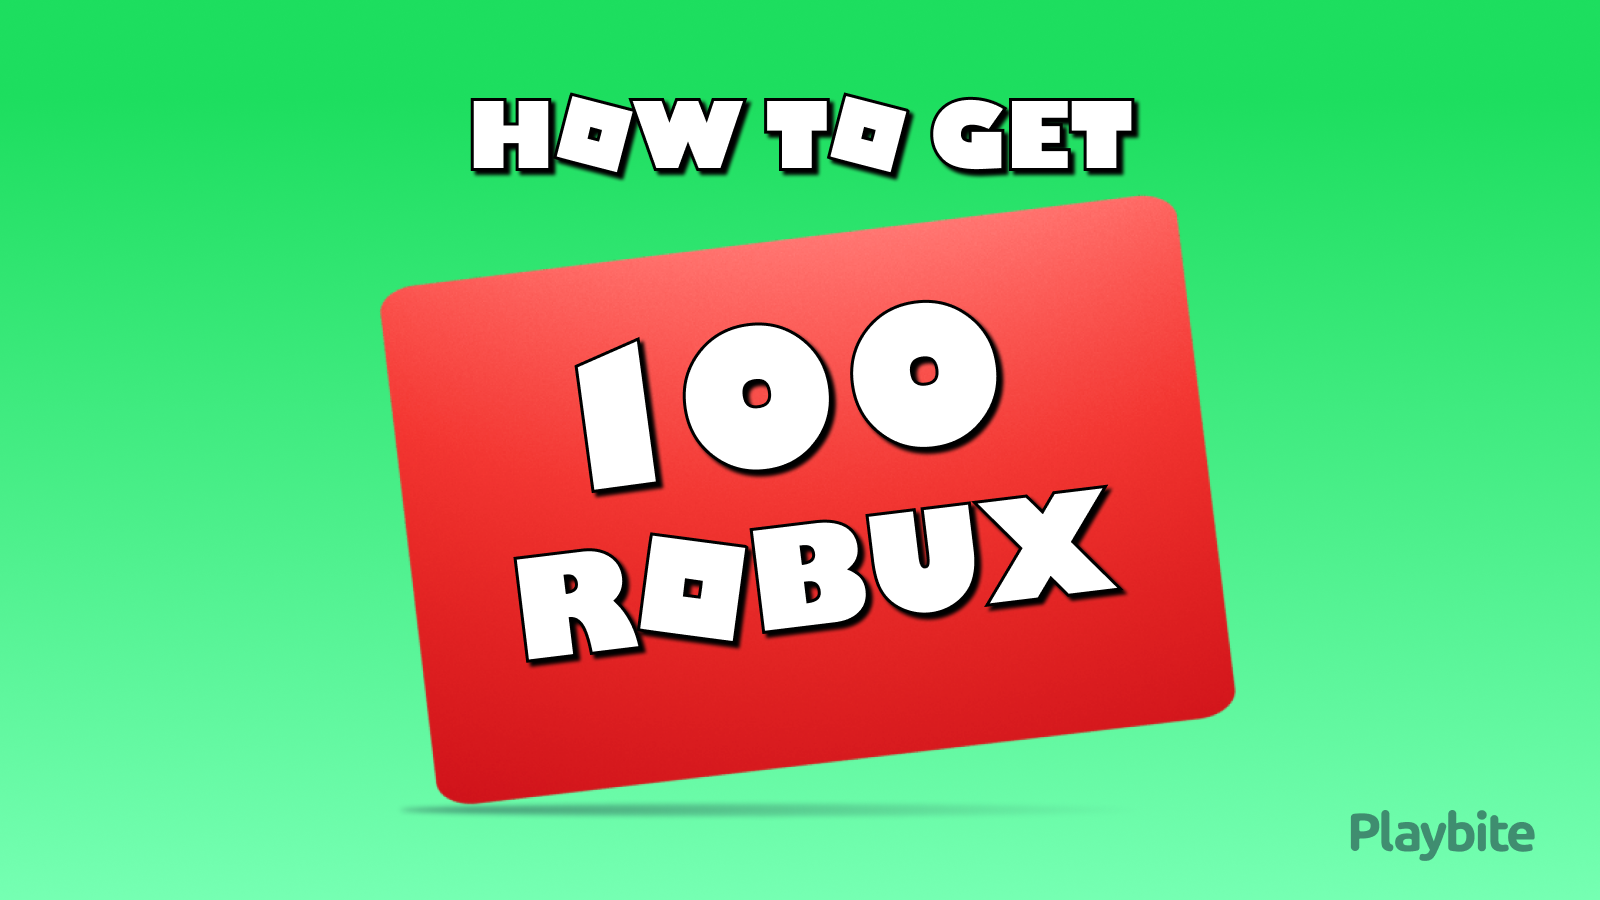 EVENTO! COMO RESGATAR OS 100 ROBUX DO ROBLOX? 